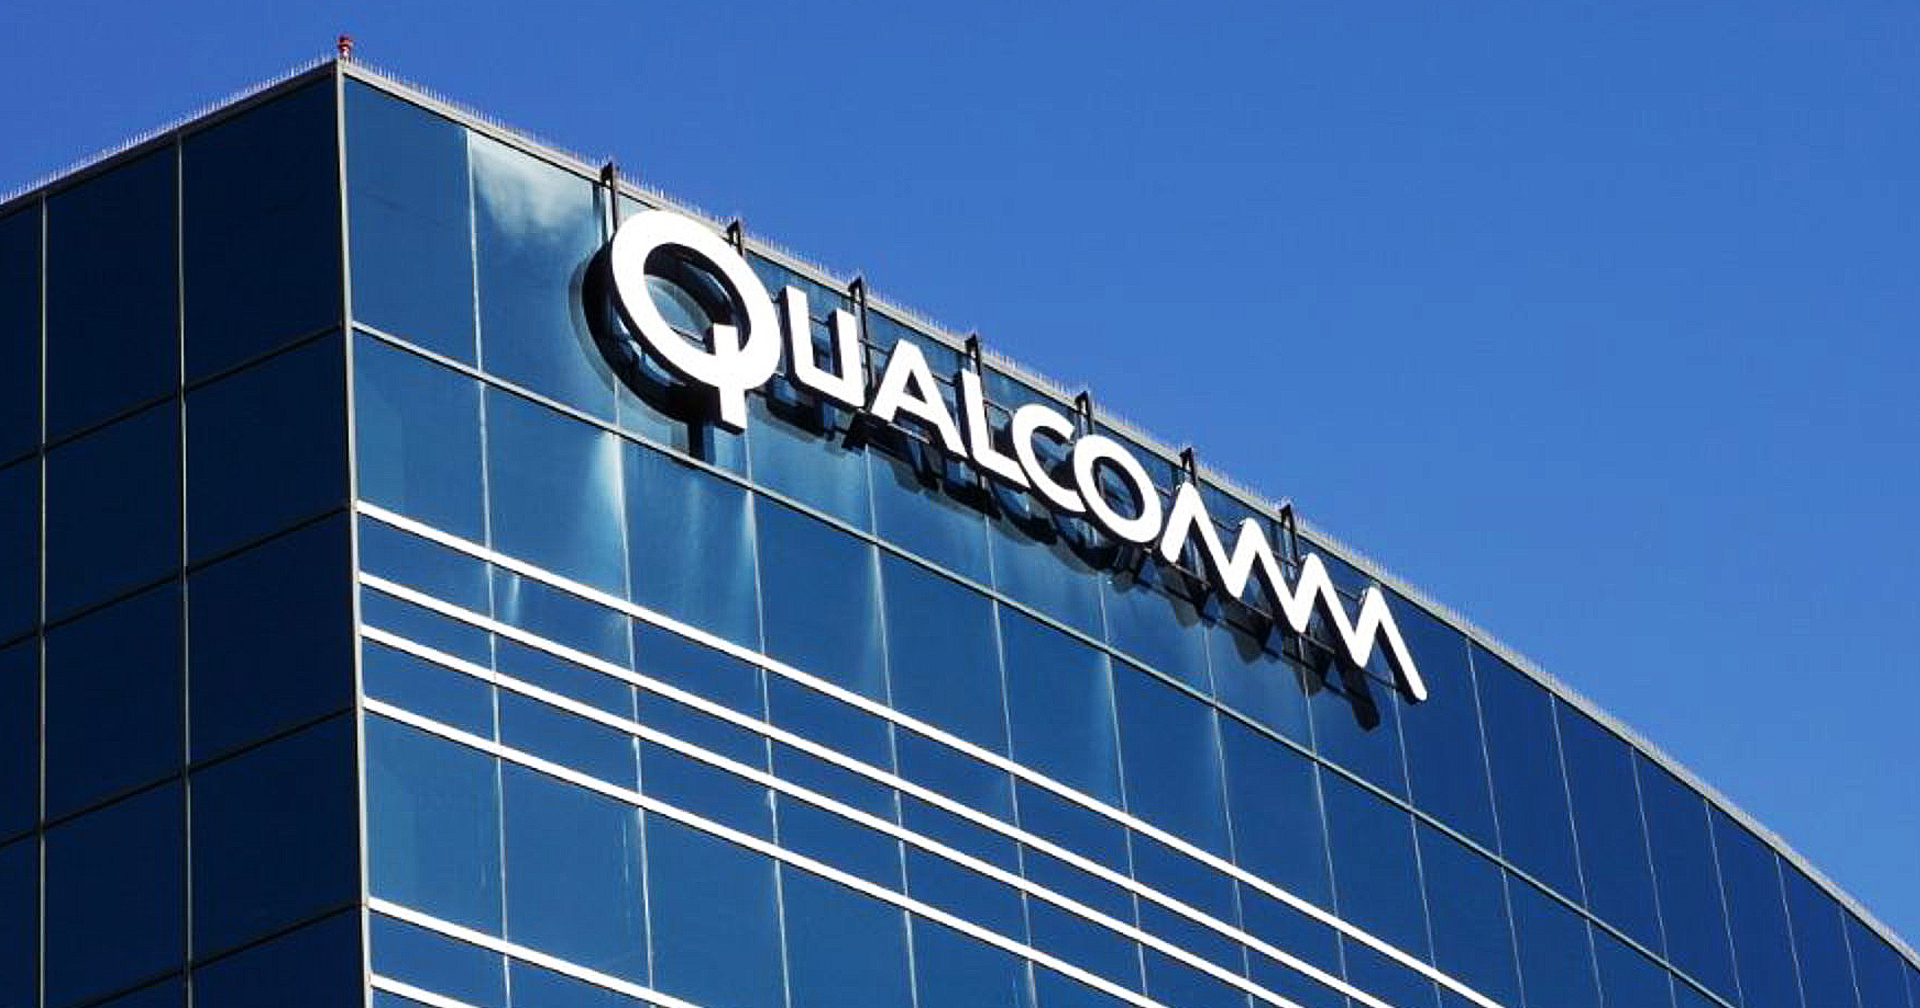 อดีตรองประธาน Qualcomm ถูกจับเพราะหลอกบริษัทให้ซื้อเทคโนโลยีที่เป็นเจ้าของอยู่แล้ว มูลค่า 150 ล้านเหรียญ